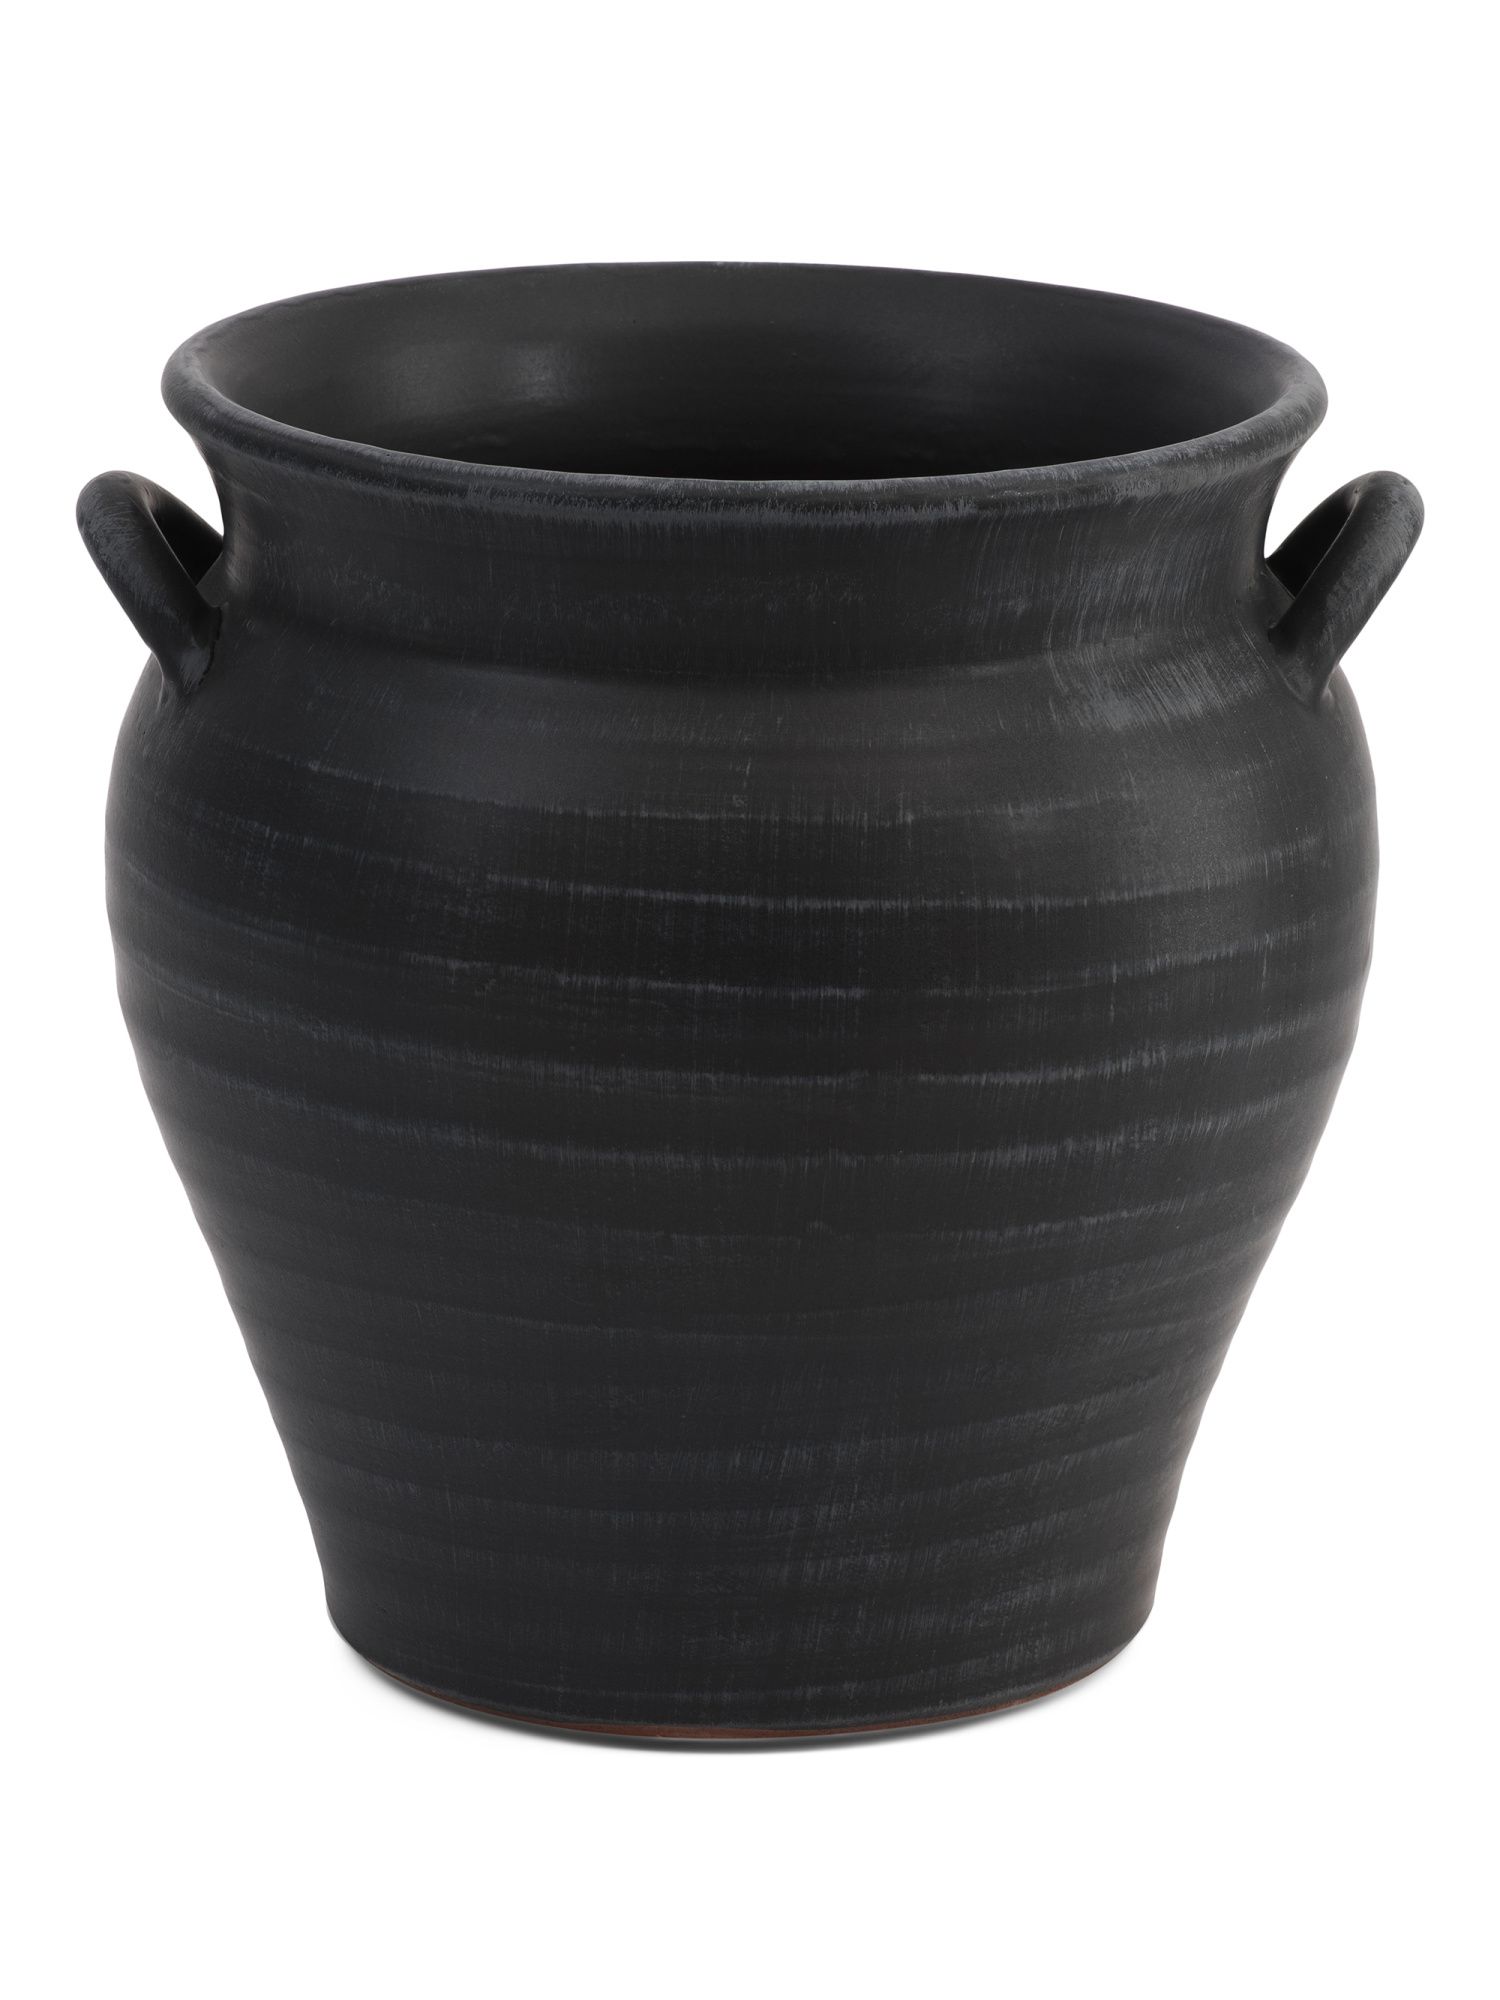 12in Handled Ceramic Planter Vase | TJ Maxx